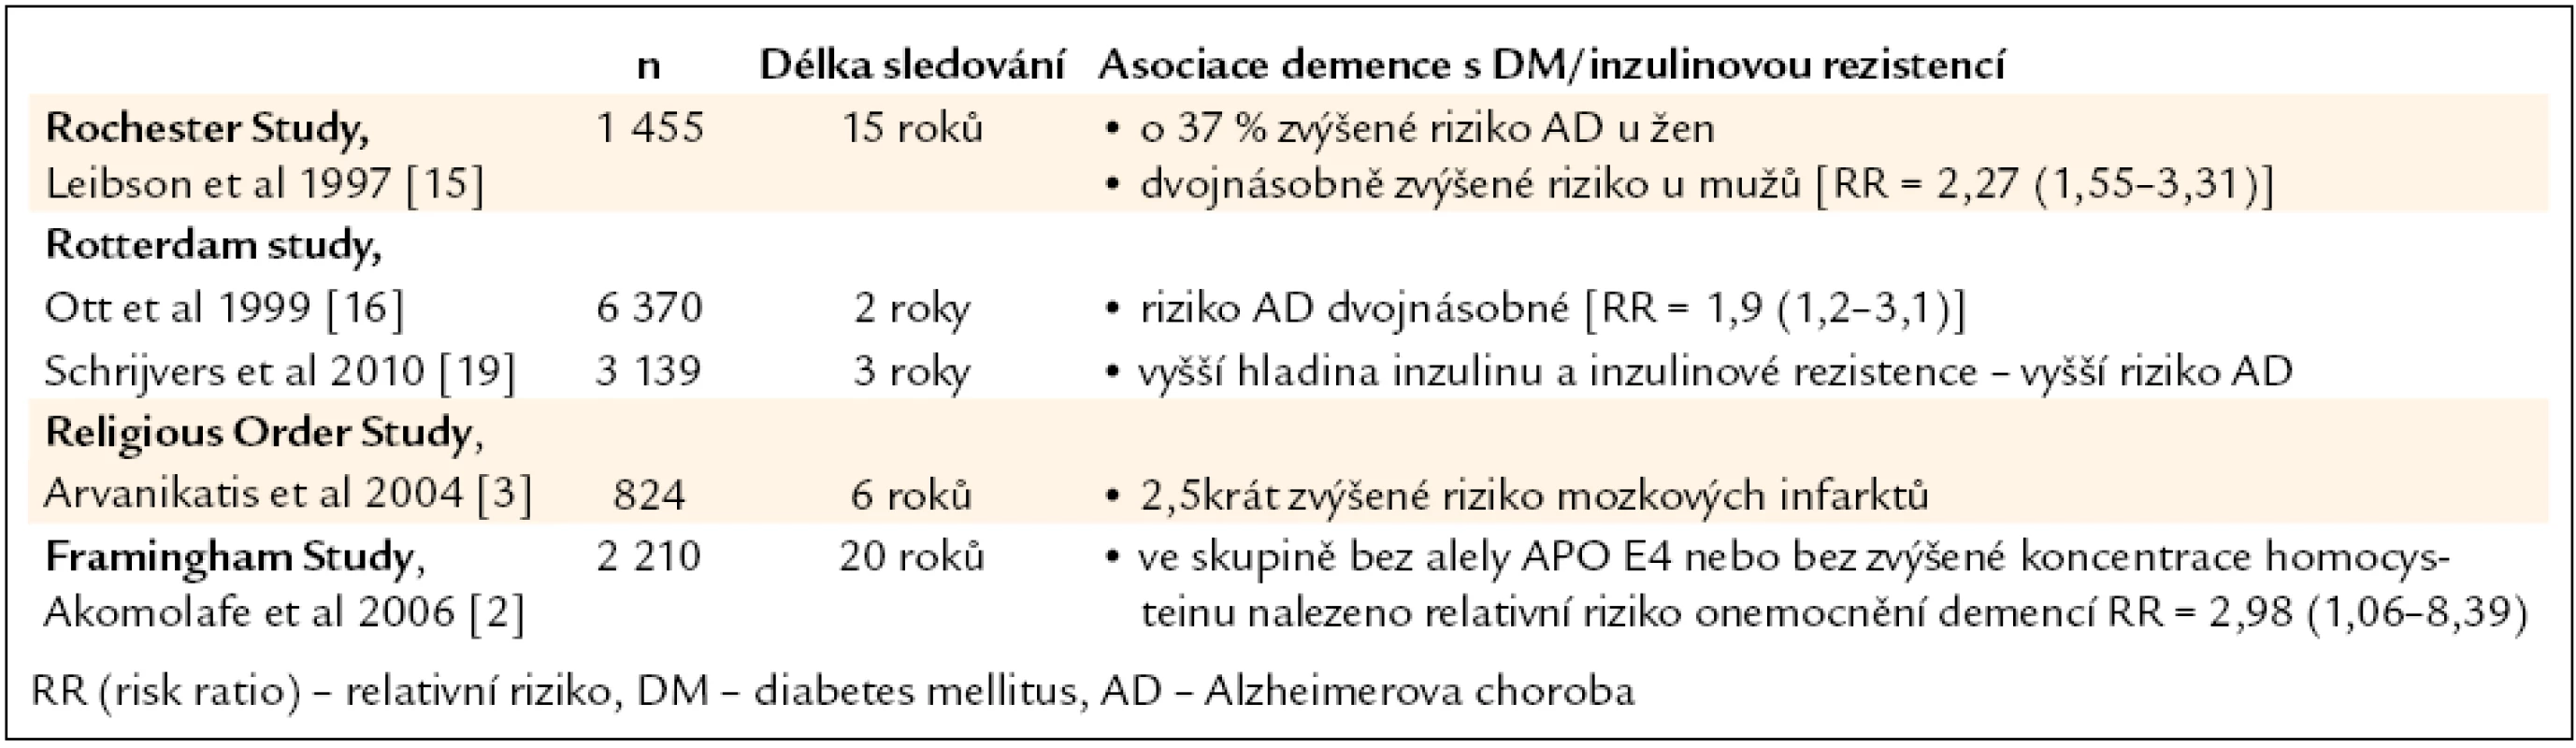 Asociace demence s diabetes mellitus v dlouhodobých epidemiologických sledováních.